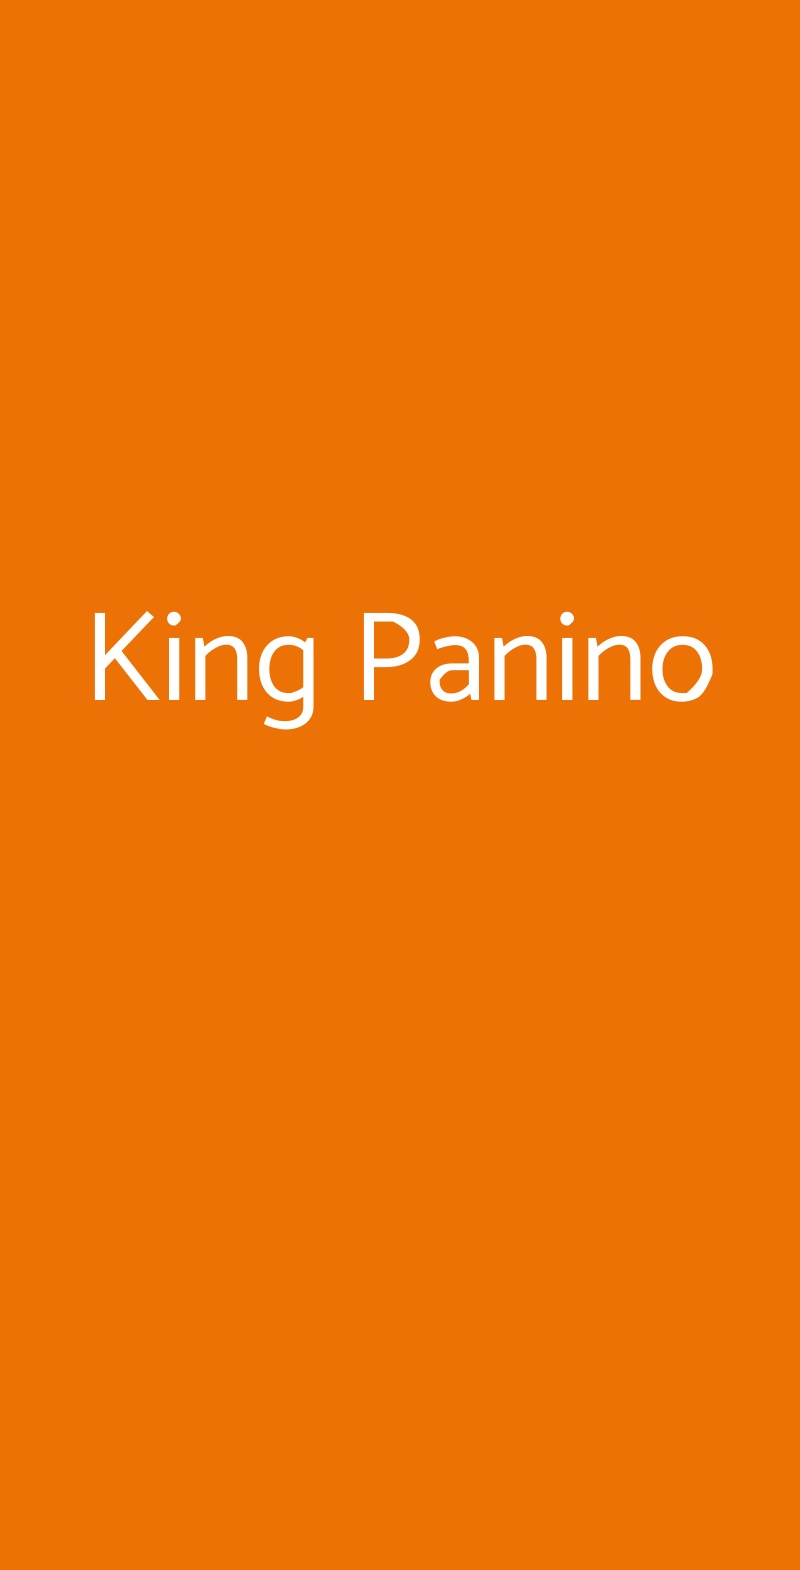 King Panino Roma menù 1 pagina